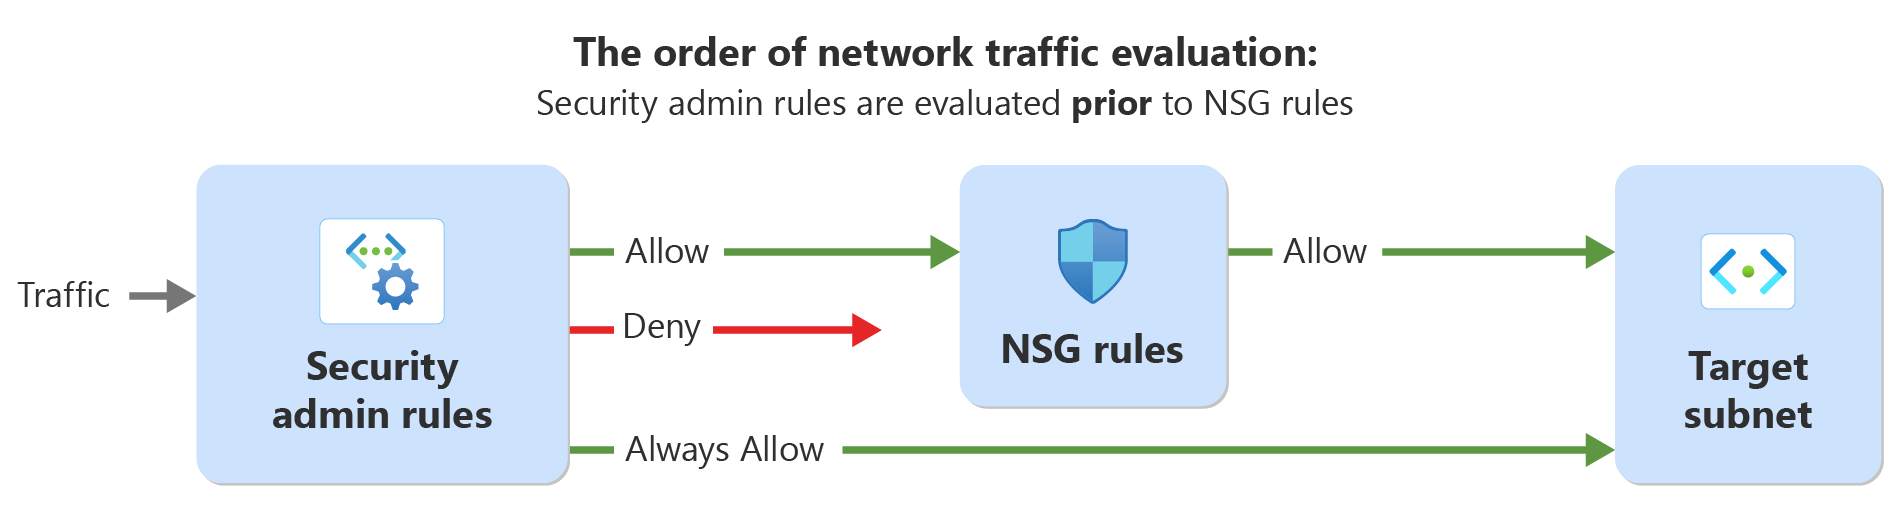 Diagrama en el que se muestra el orden de la evaluación para el tráfico con reglas de administrador de seguridad y reglas de seguridad de red.